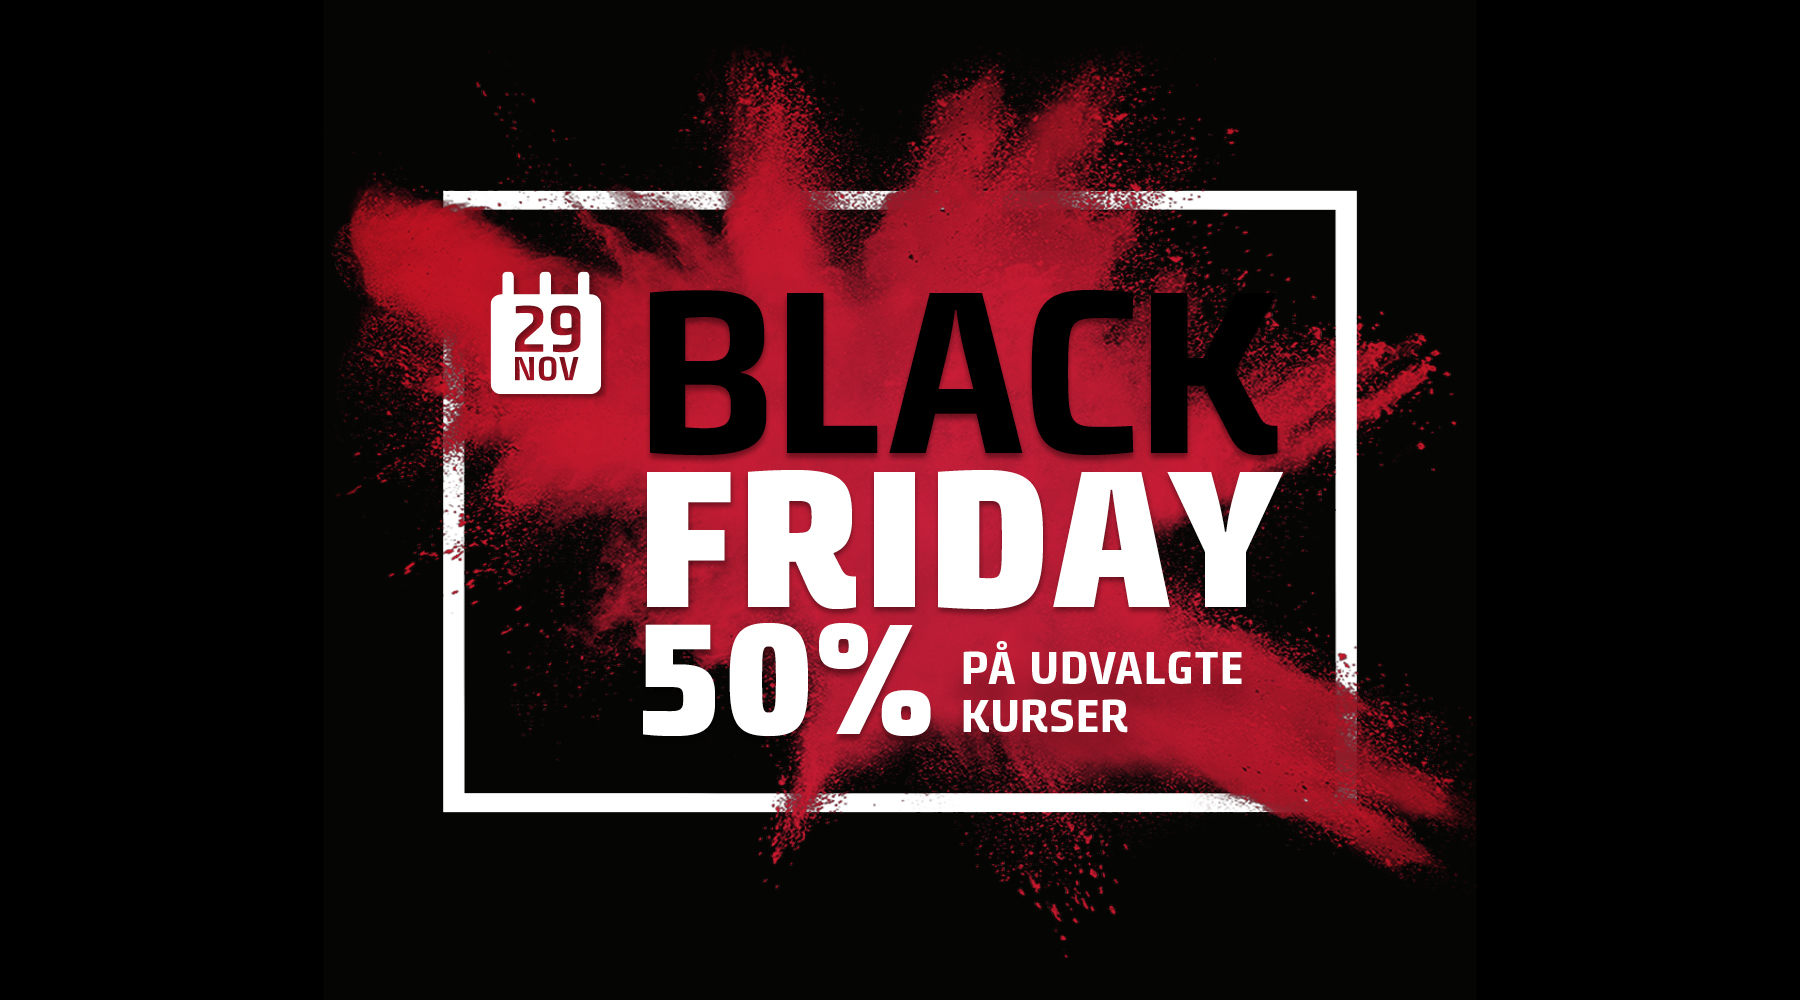 Black Friday - 50% rabat på udvalgte kurser - Kurser - Teknologisk Institut